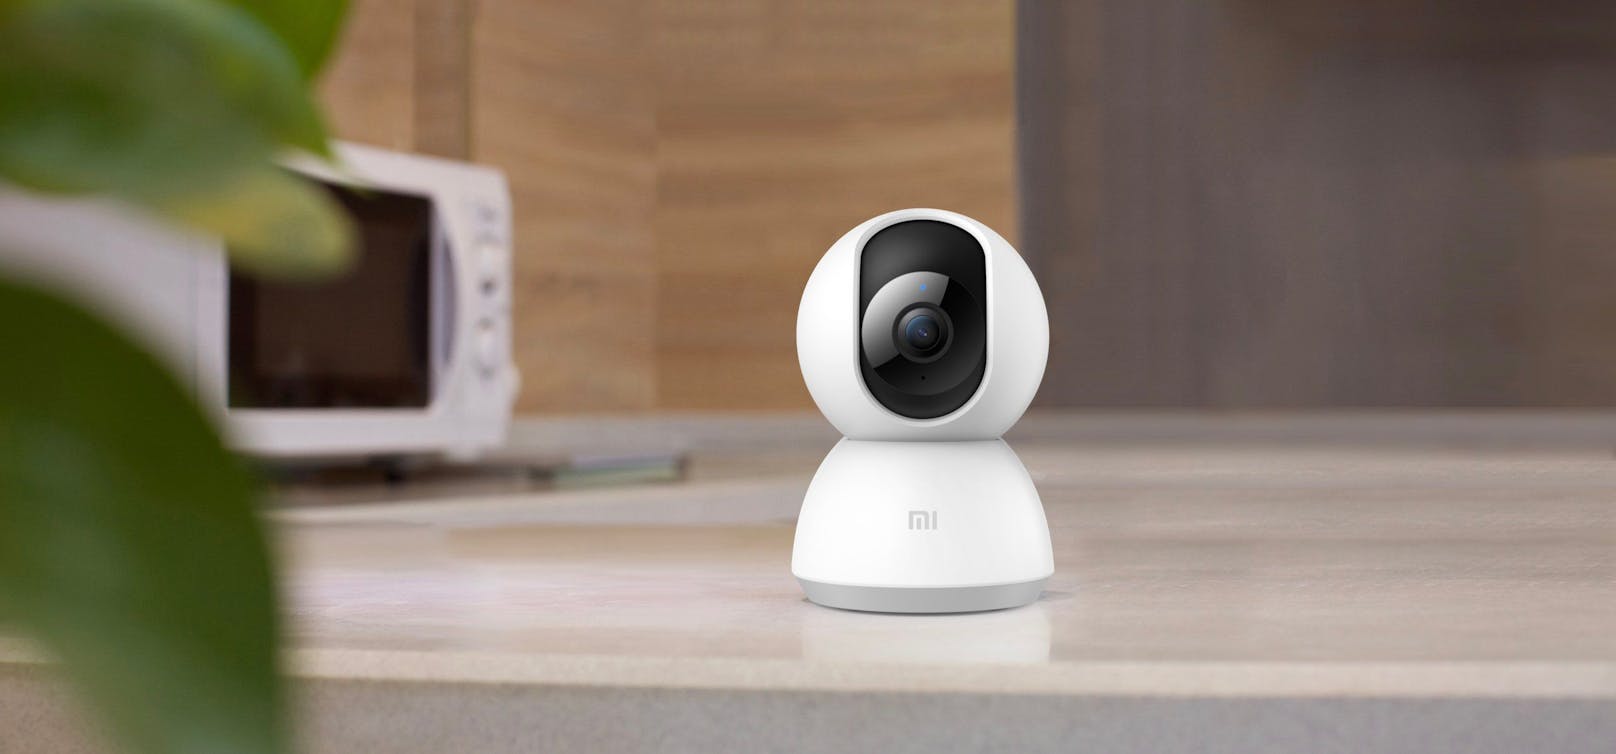 Mi 360° Home Security Kamera und XIAOMI Home App erhalten BSI Kitemark für IoT-Geräte im Wohnbereich und sichere digitale Apps.